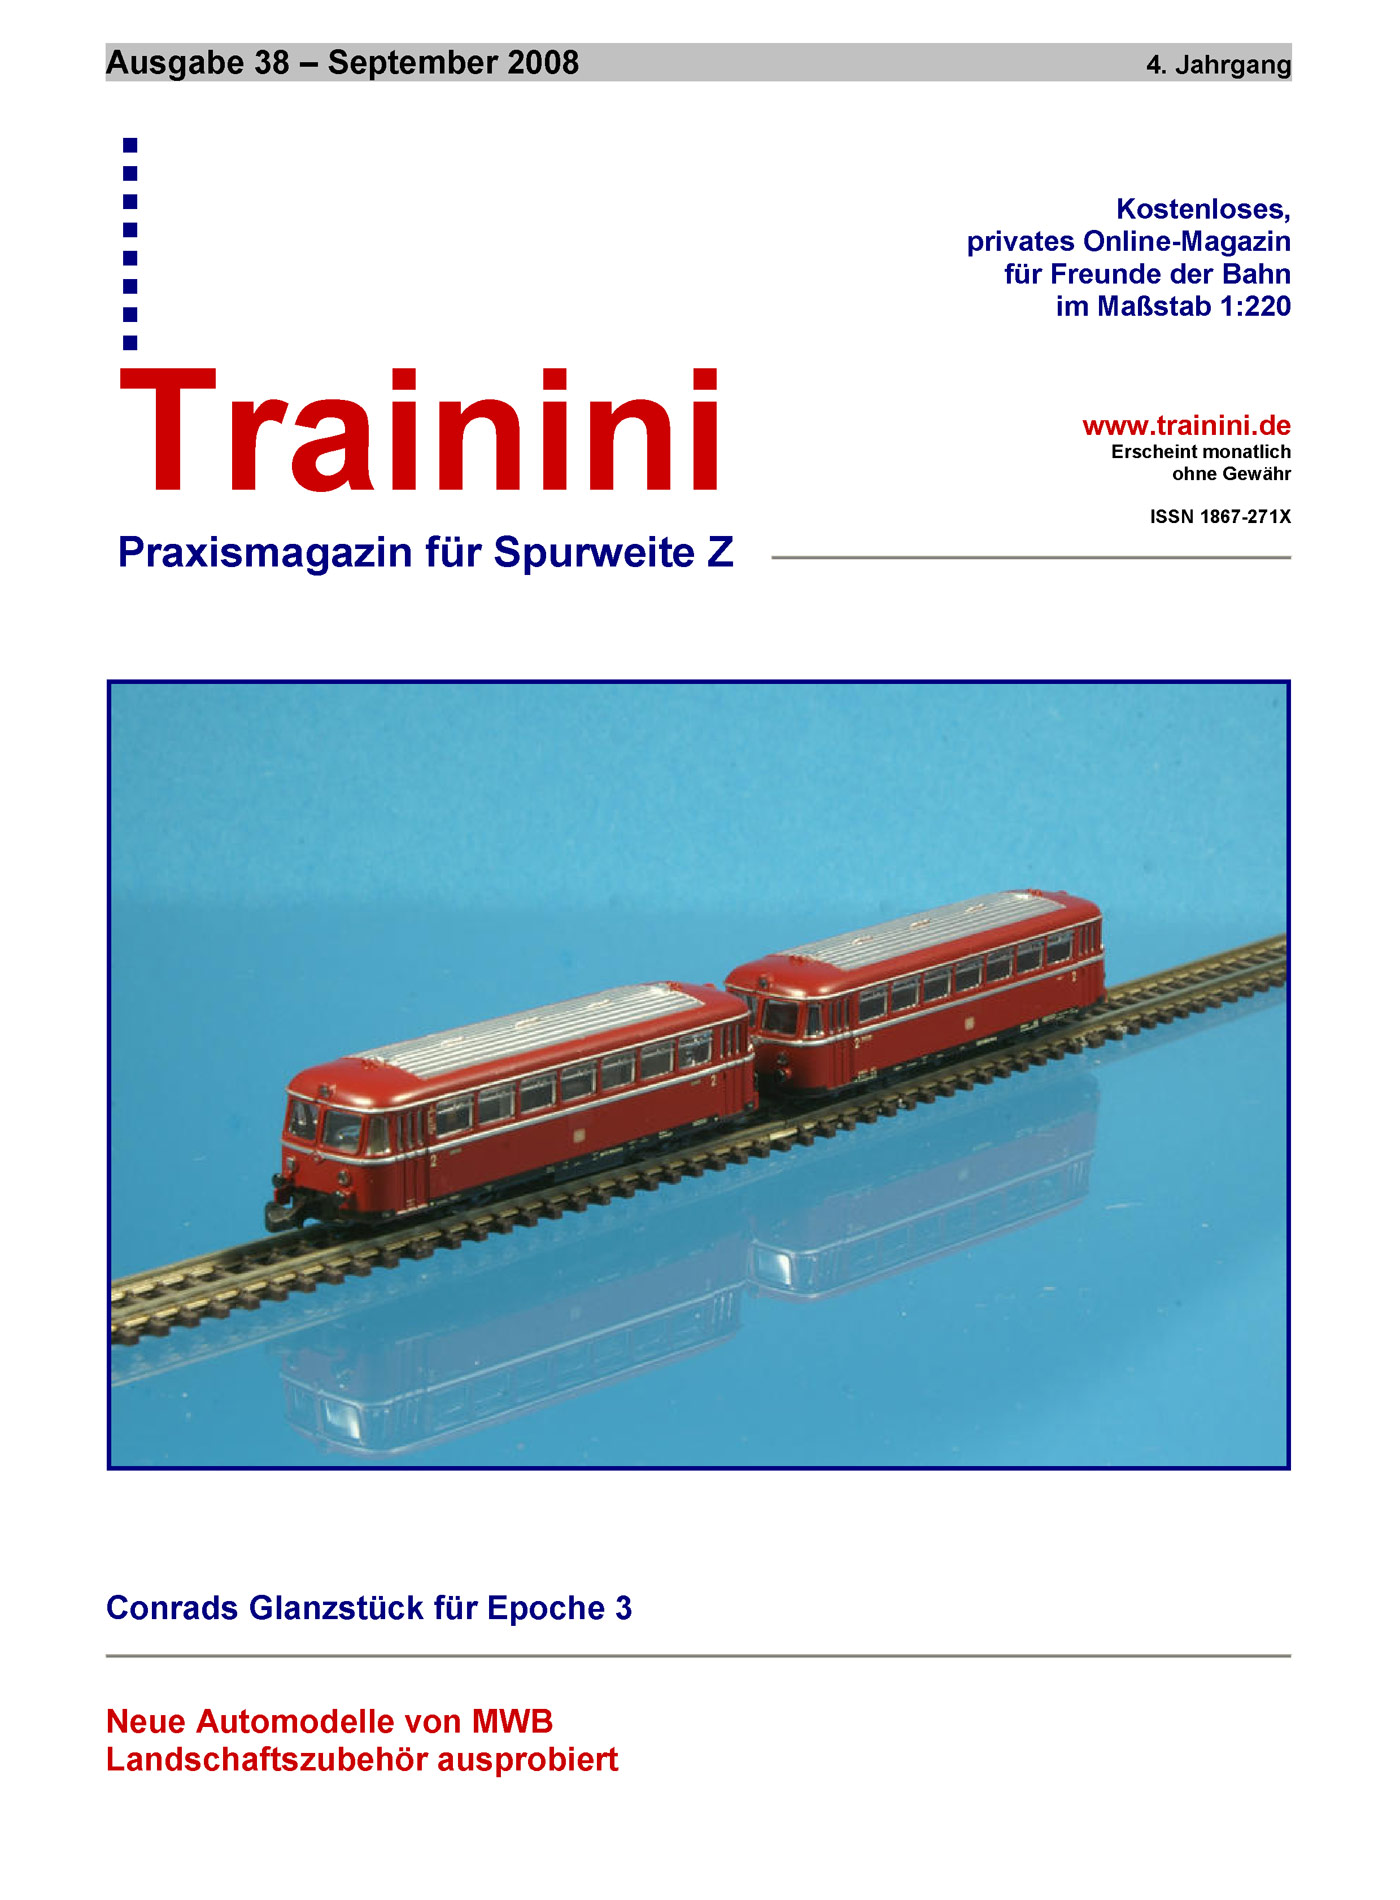 Trainini Ausgabe September 2008